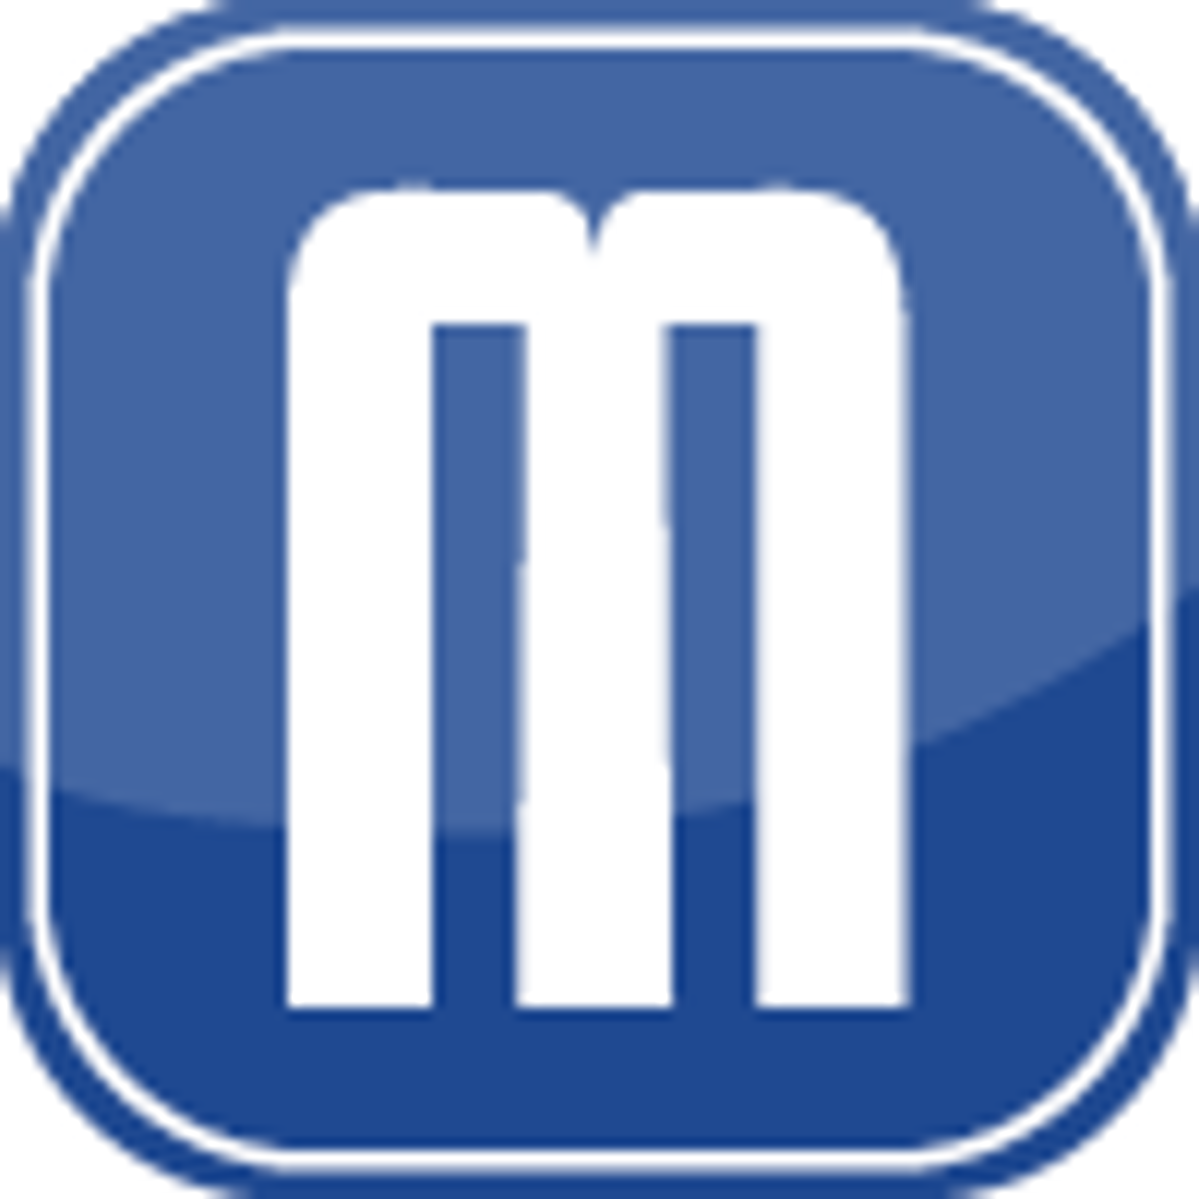 Das Logo von "Maerker", ein blaues Quadrat mit einem weißen "m" darauf.